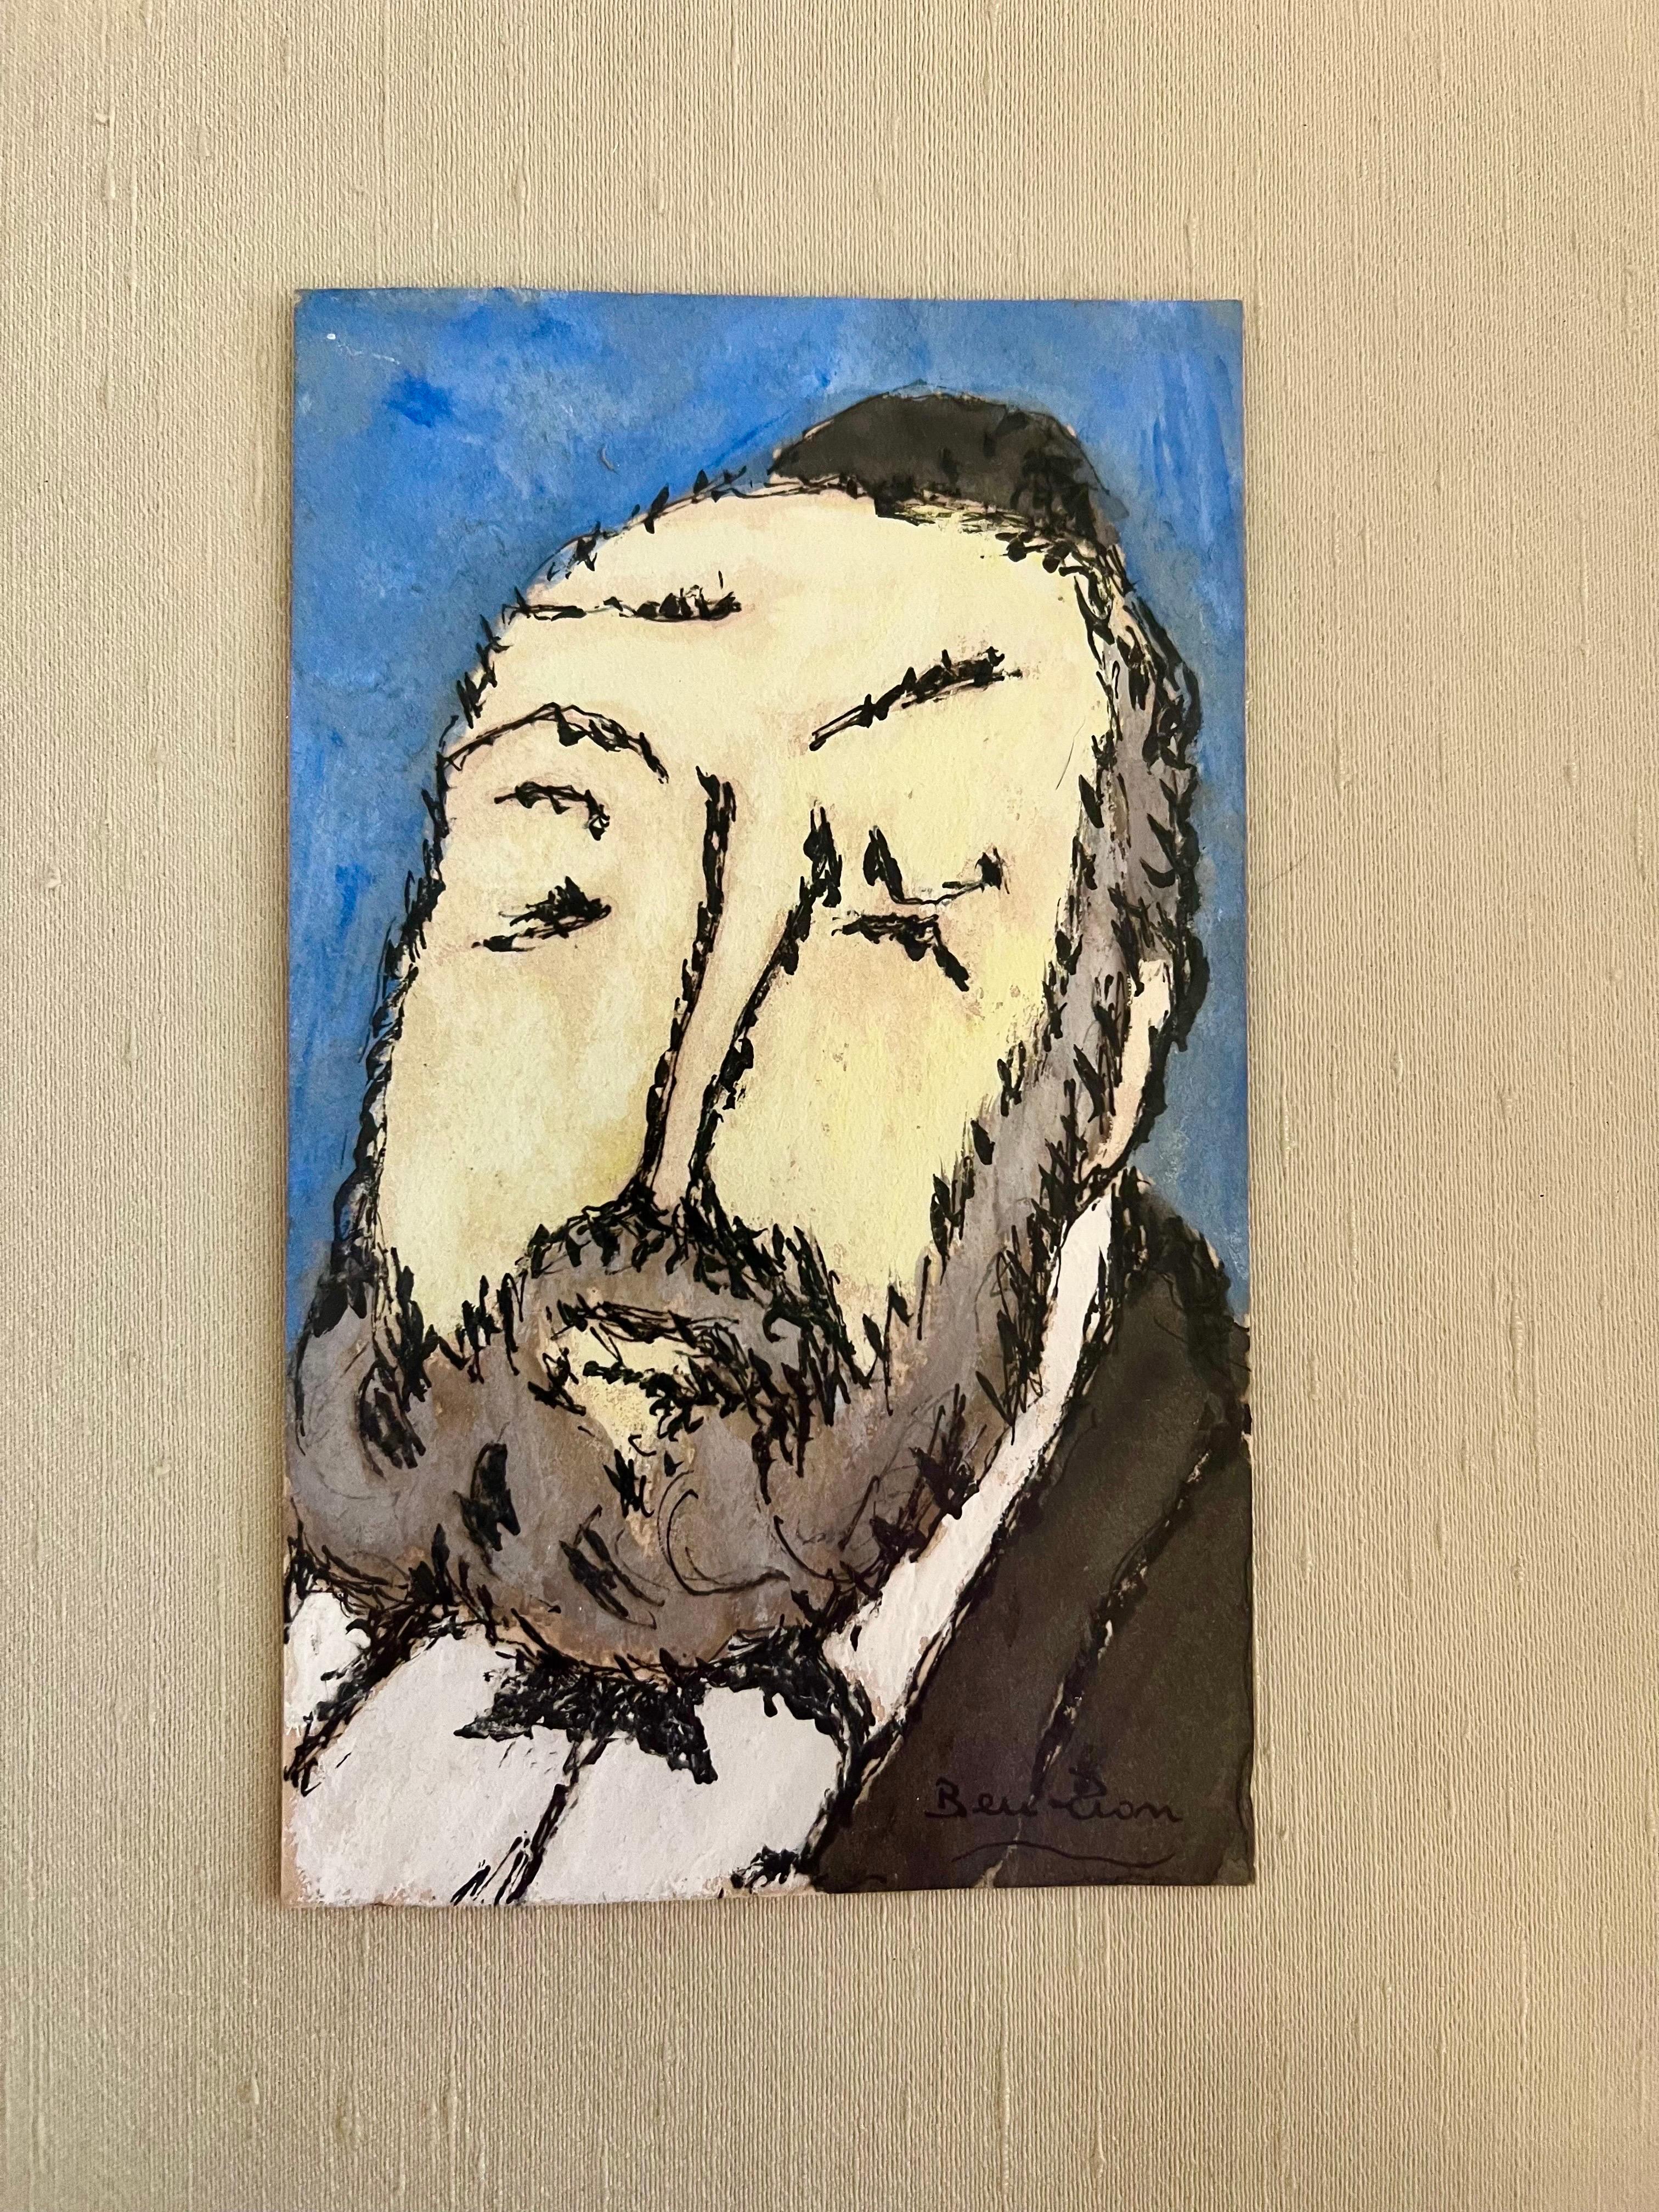 Ben ZIon Expressionist Judaica Rabbi Watercolor Painting Jewish Modernist WPA - Art by Ben-Zion Weinman